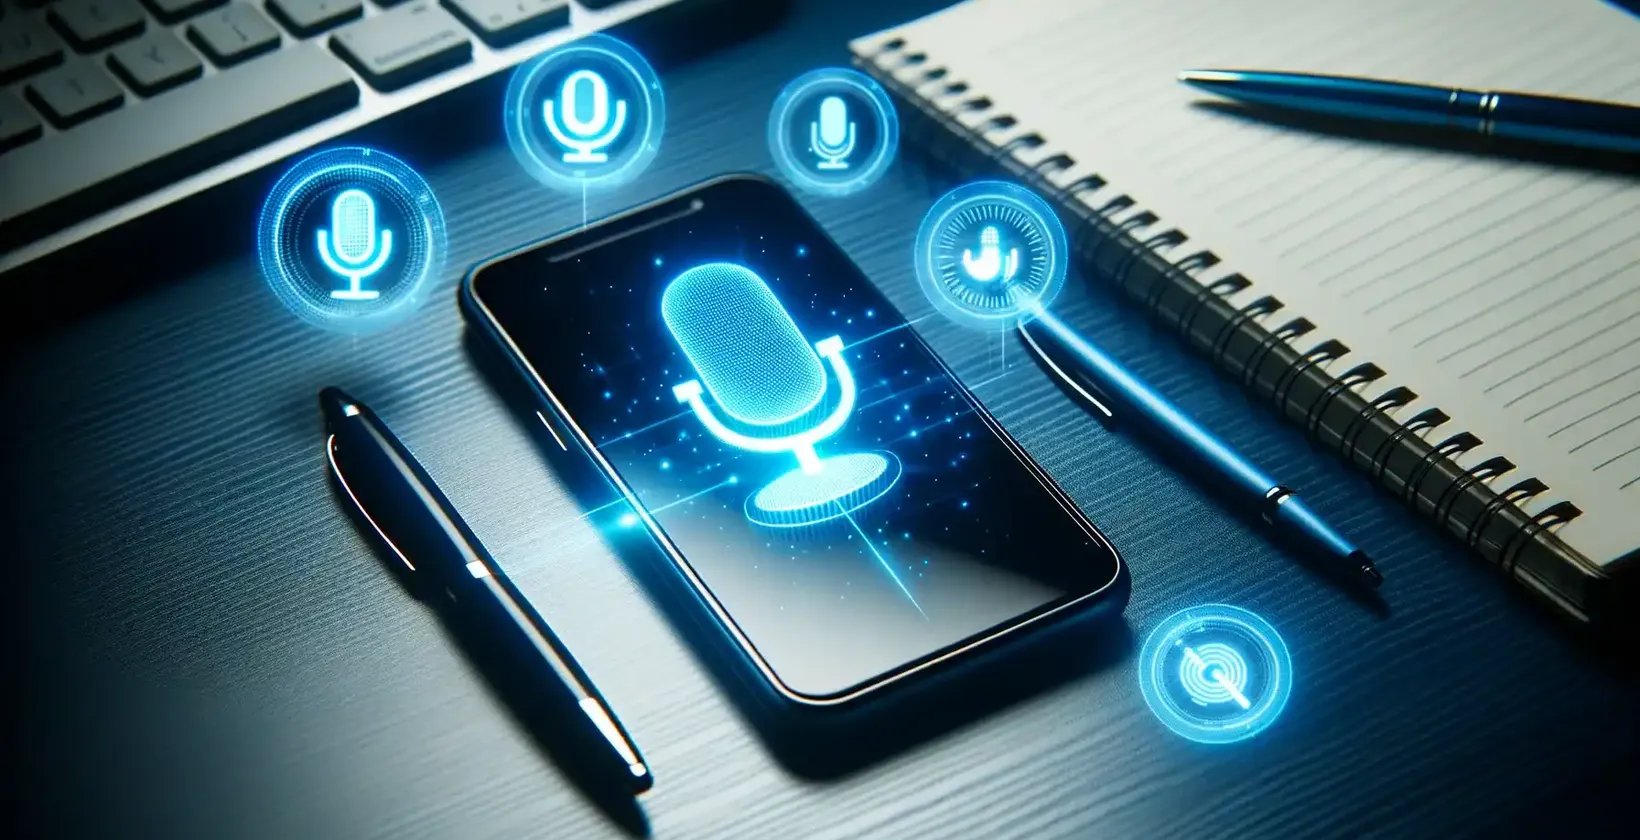 הוספת טקסט לווידאו במכשירי Samsung המאויר על ידי טלפון חכם של Samsung המציג סמלי פקודות קוליות על שולחן